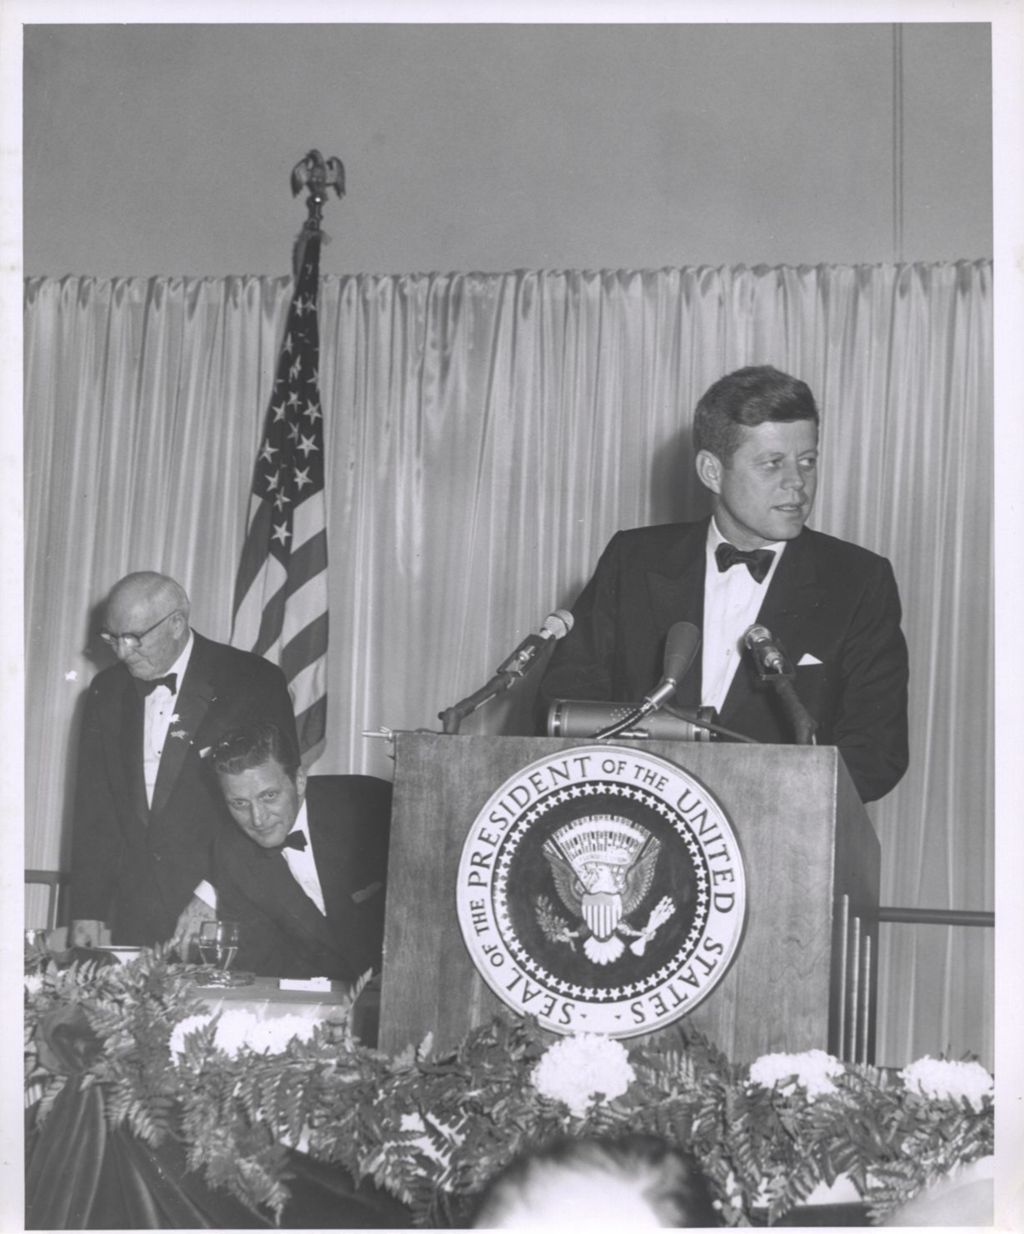 President John F. Kennedy speaking at Democratic fundraising dinner